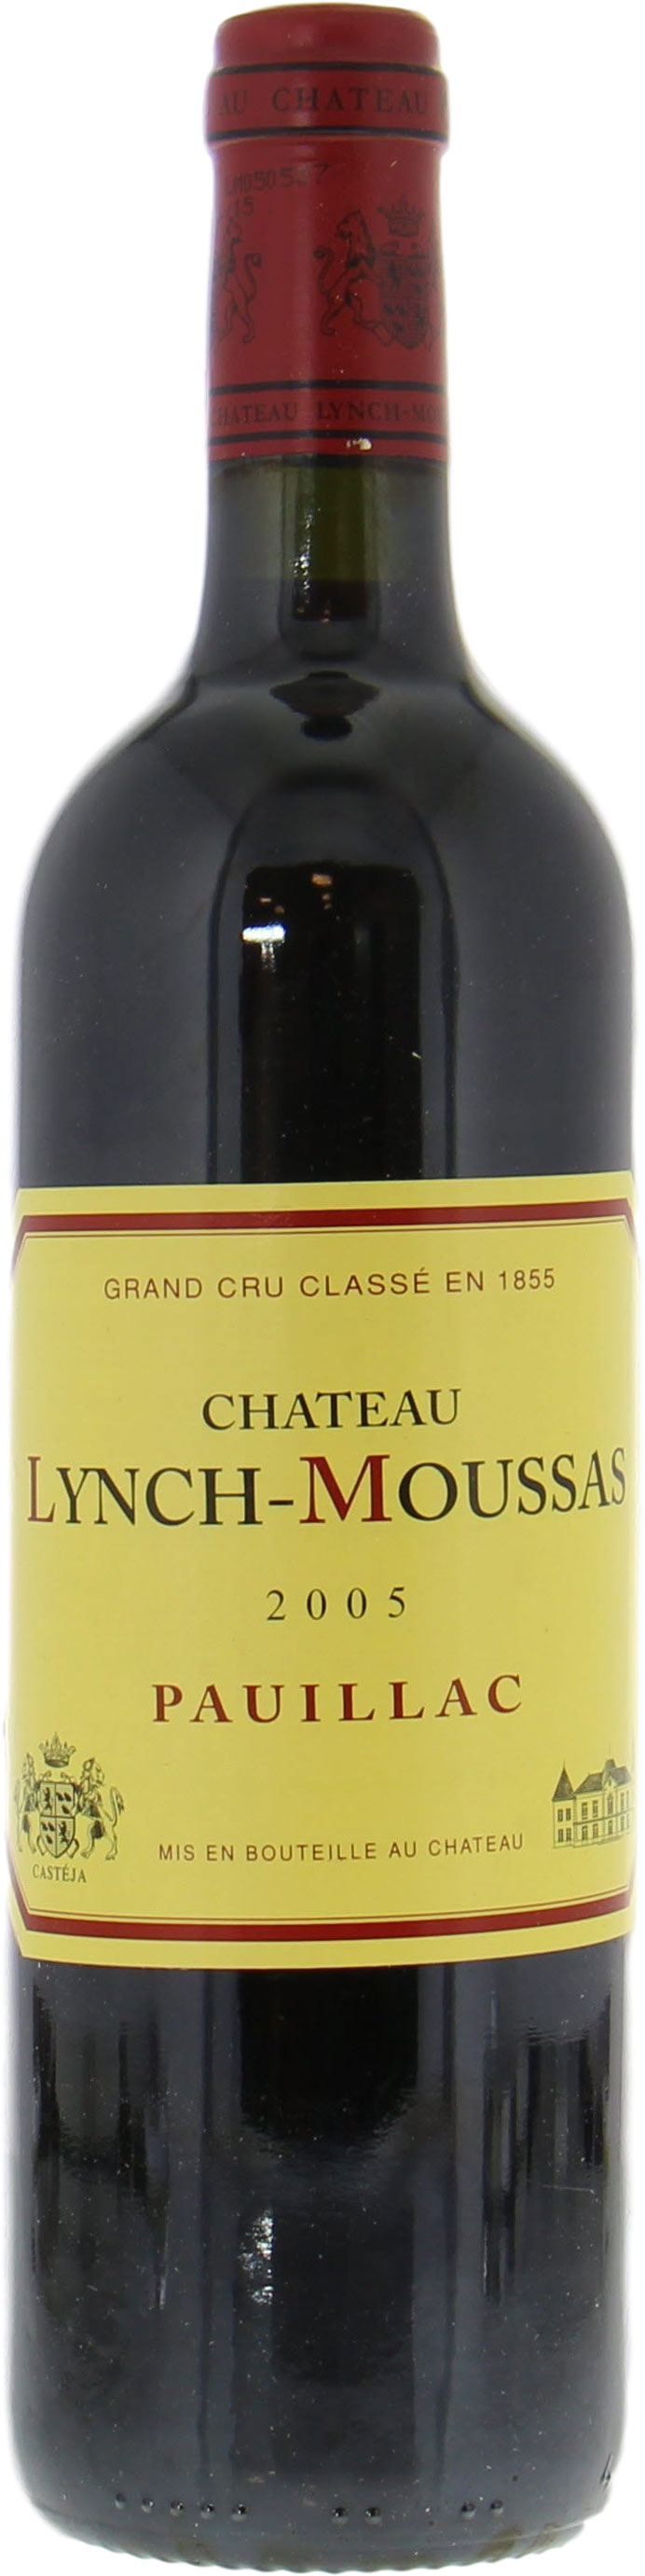 Chateau Lynch-Moussas - Chateau Lynch-Moussas 2005 Perfect